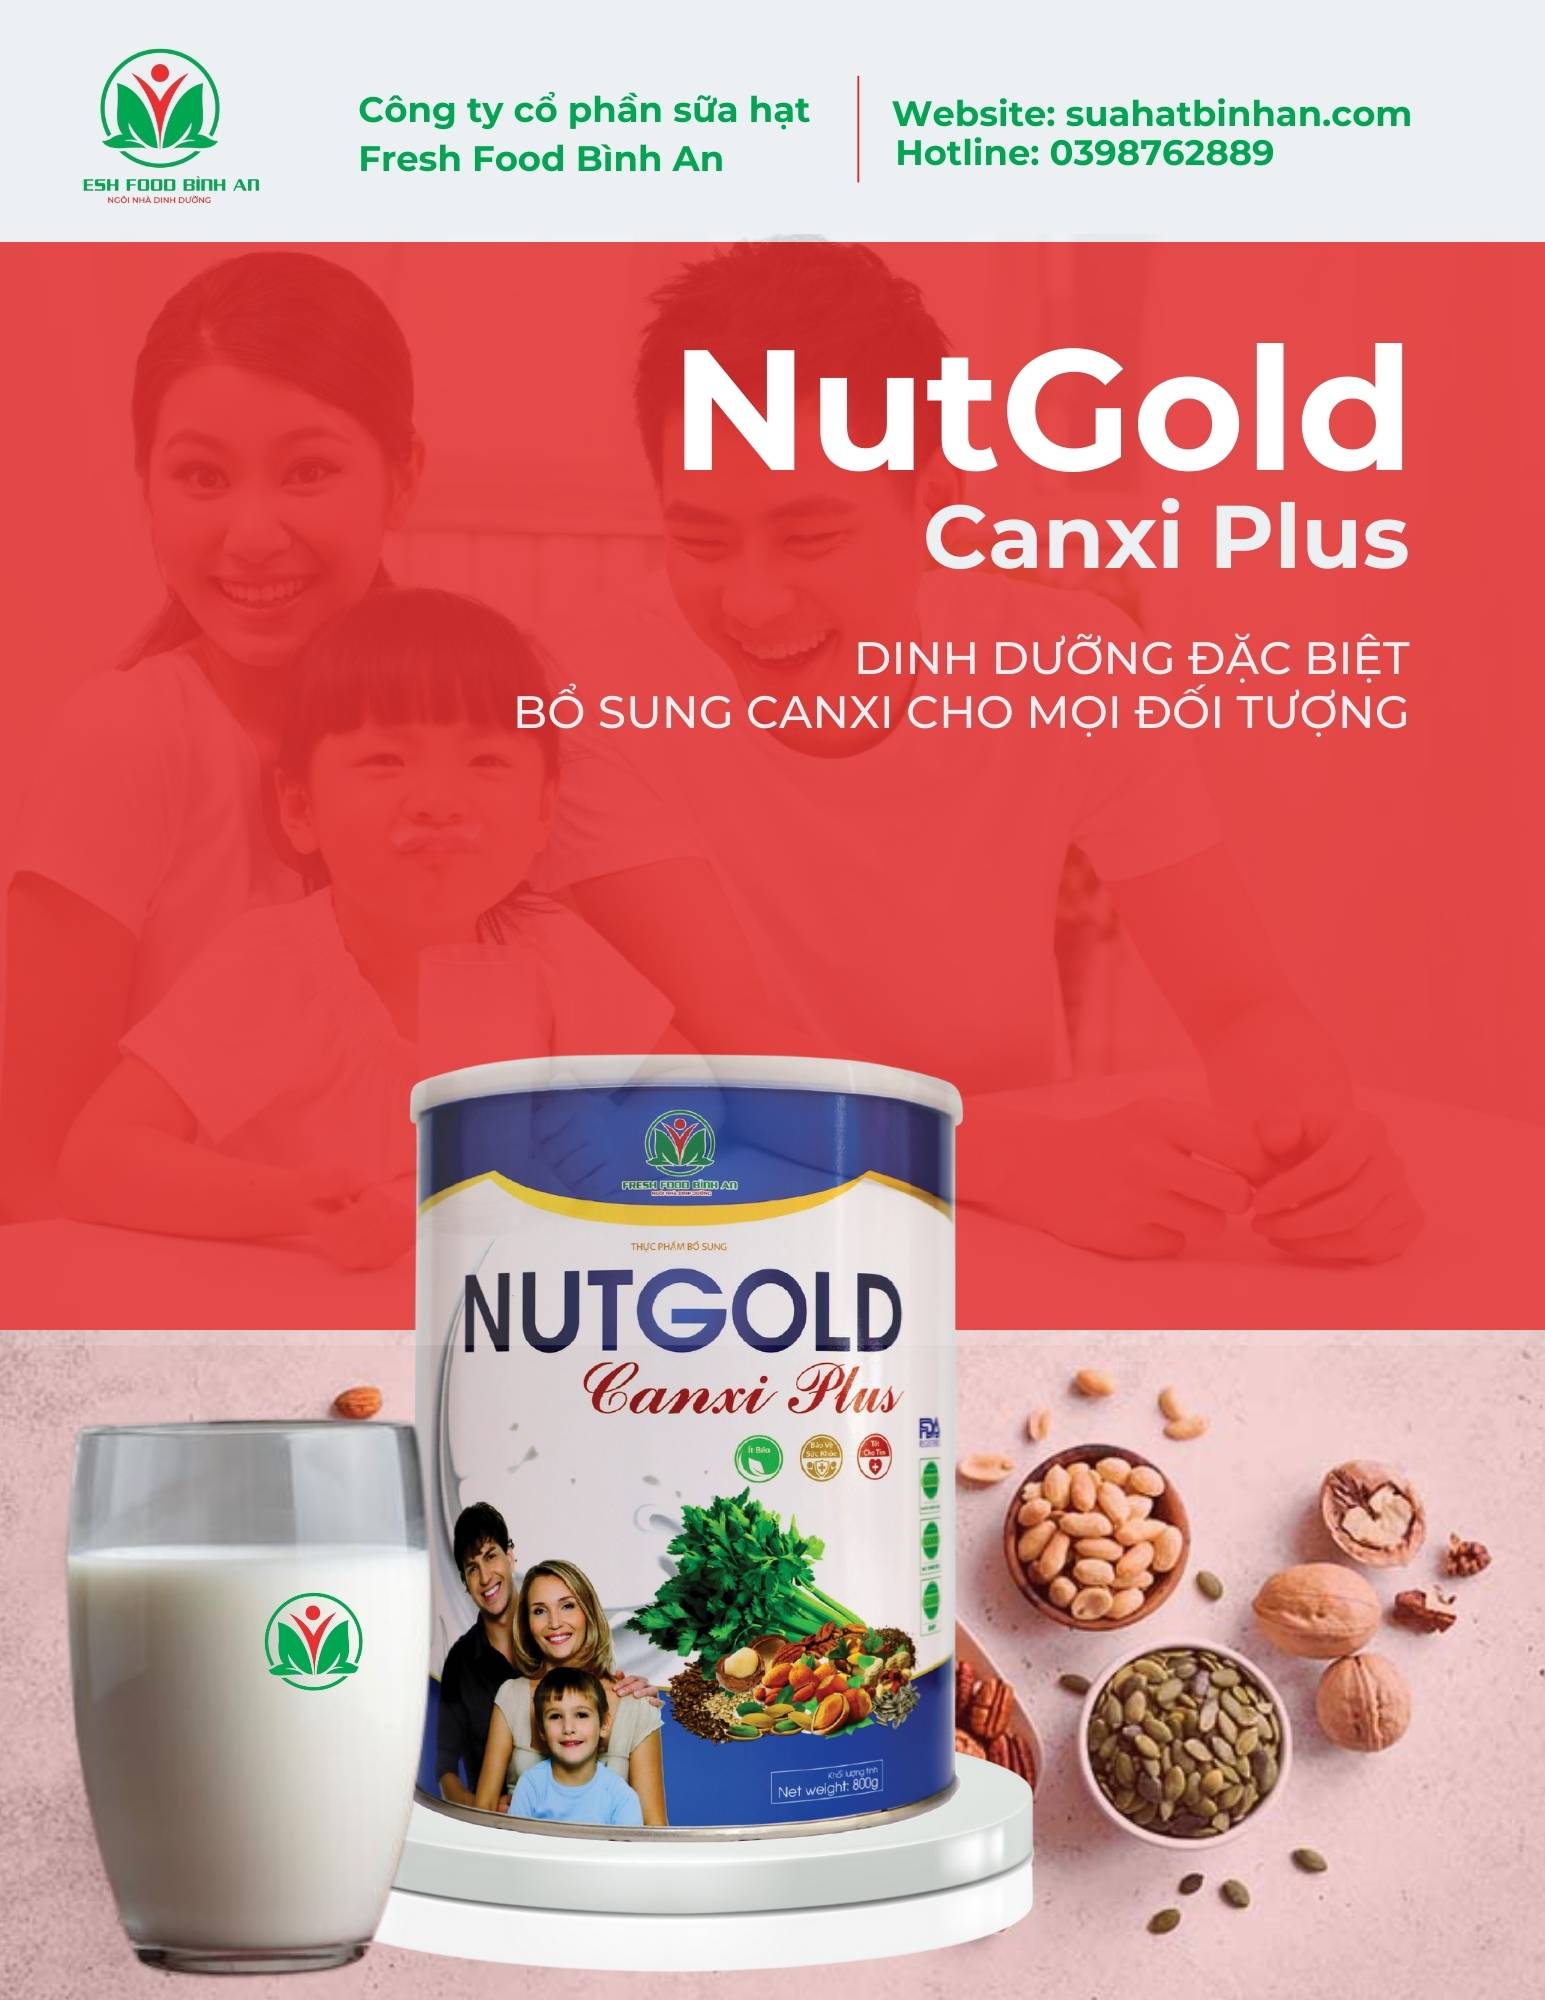 Sữa hạt Binh An NutGold Canxi Plus (6)